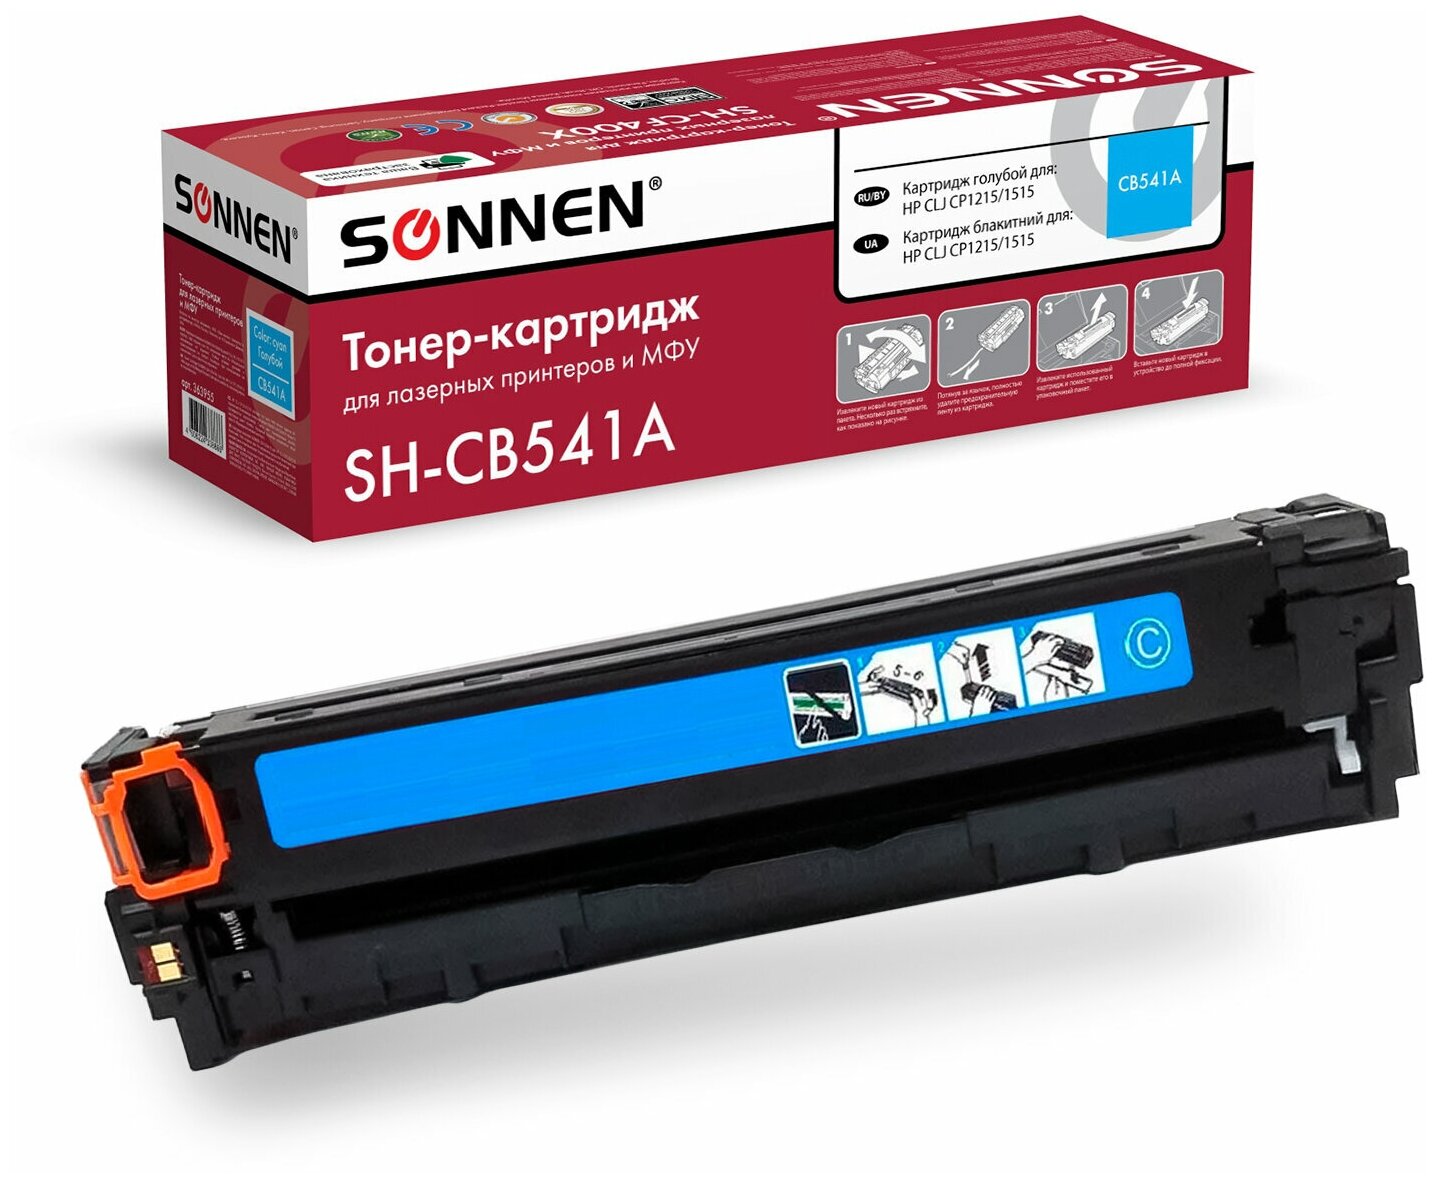 Картридж лазерный SONNEN (SH-CB541A) для HP СLJ CP1215/1515 высшее качество голубой,1400 стр. 363955